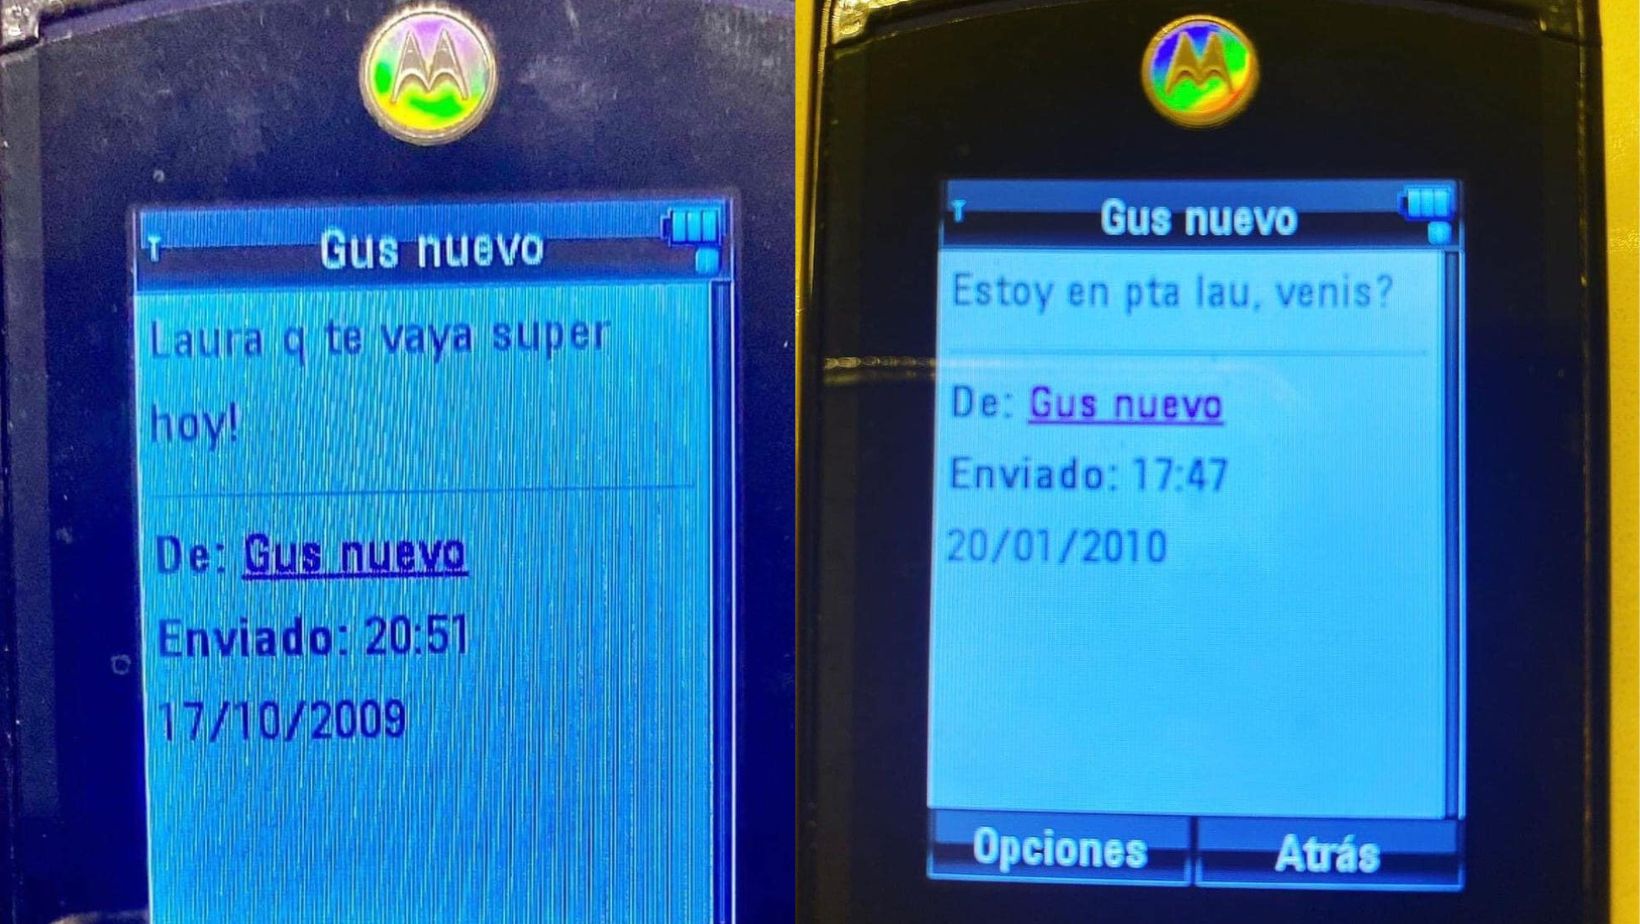 Mensajes de texto intercambiados entre Gustavo Cerati y Laura en 2009 y 2010.
(Foto: Laura_cerati)